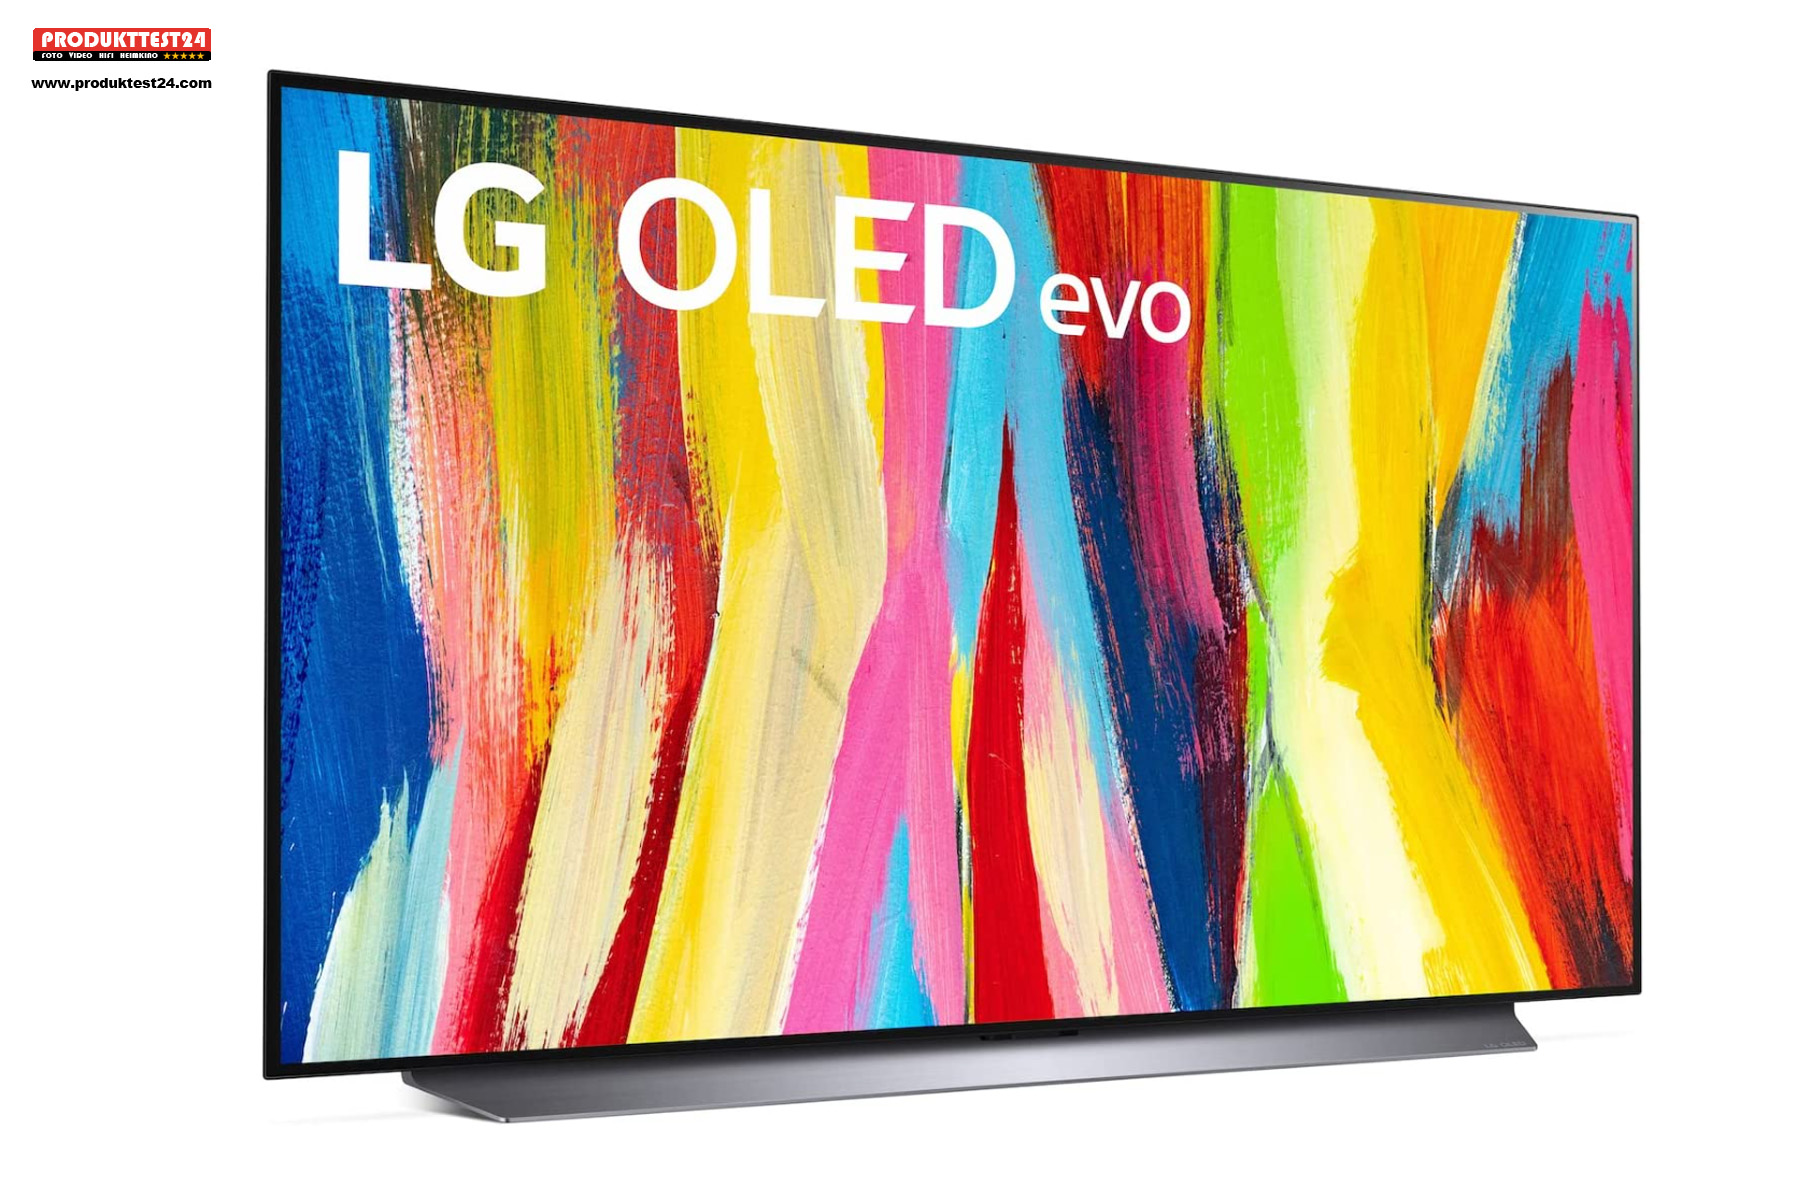 Der LG OLED Evo Fernseher mit 120 Hz, Twin Tuner, Sprachsteuerung und Riesen App-Auswahl.